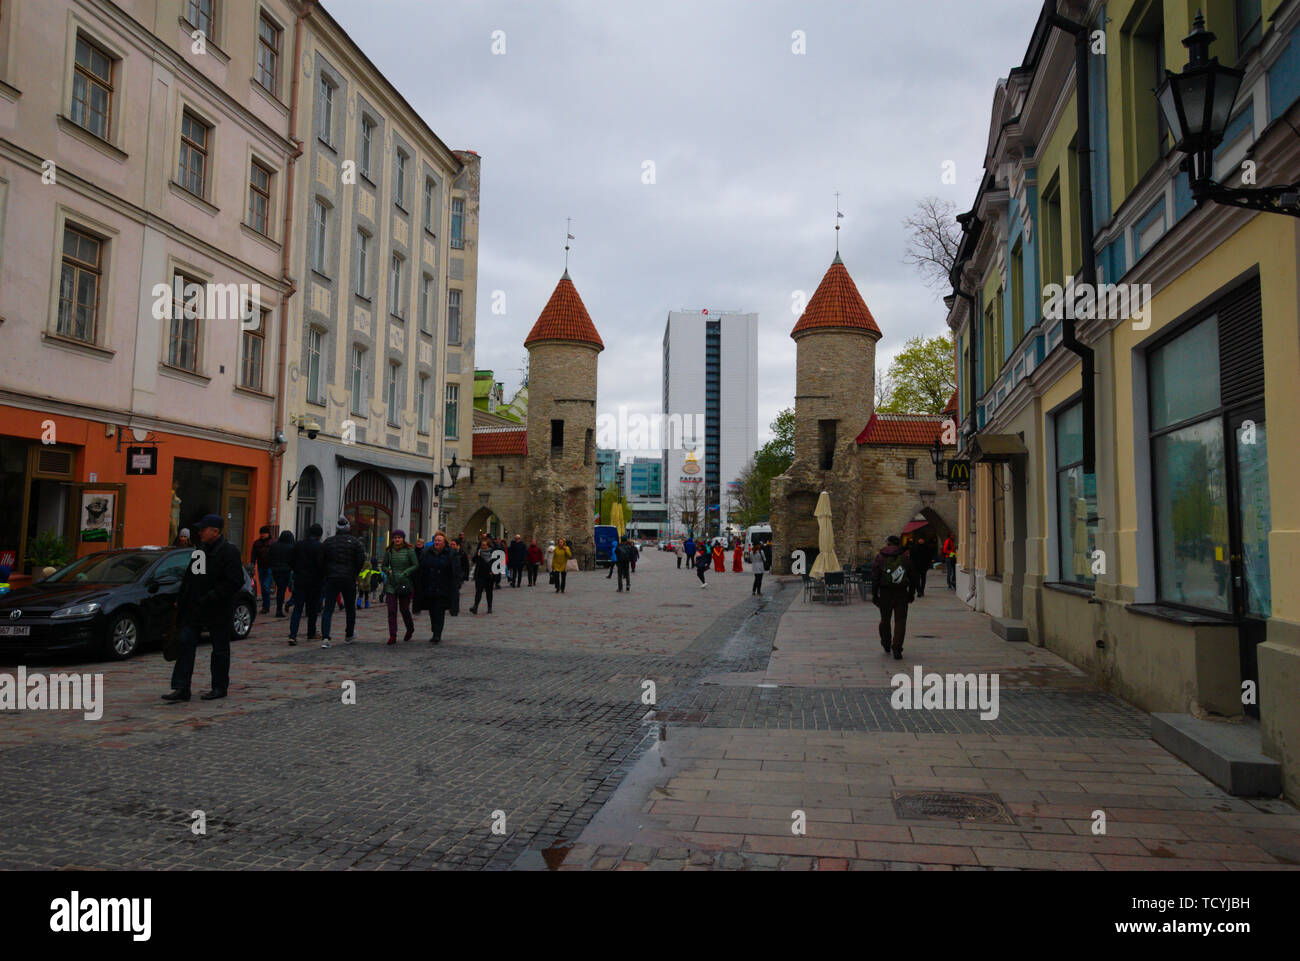 The Viru Gate, Tallinn, Estonia Stock Photo